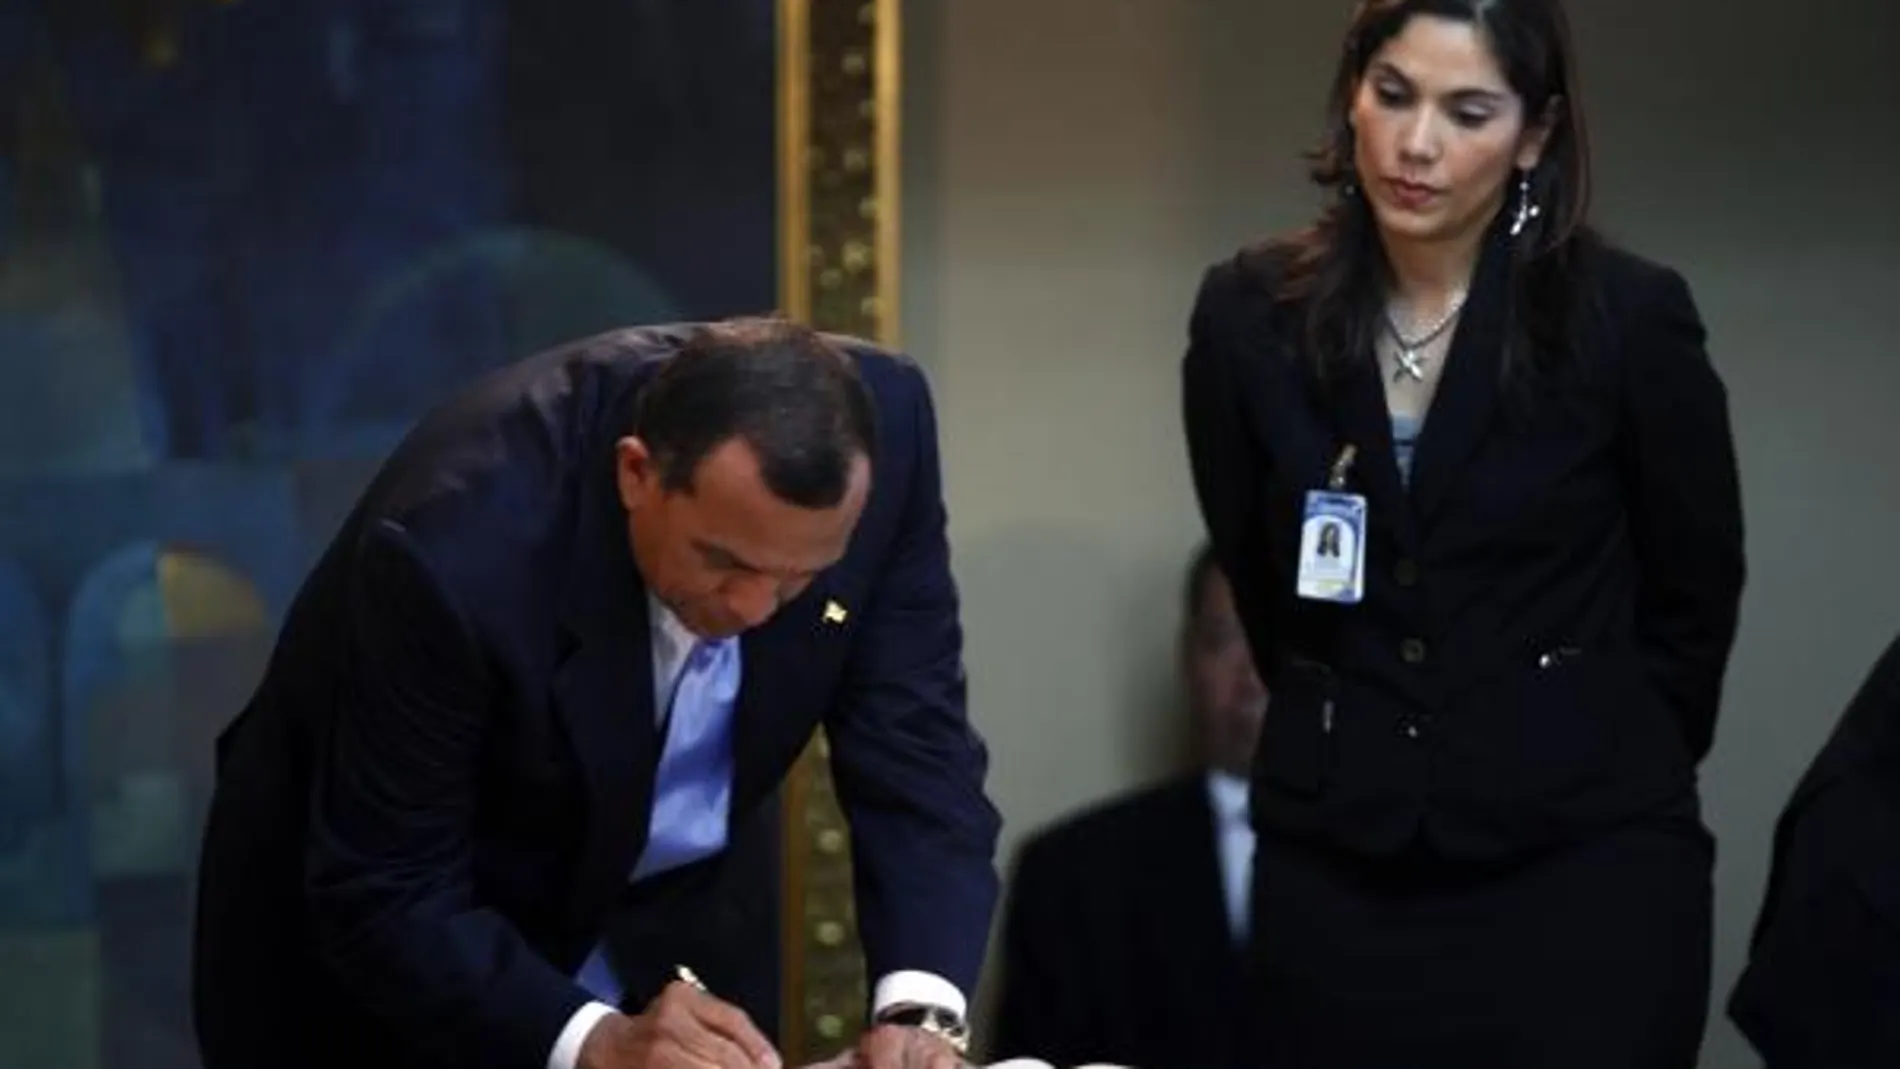 El presidente de Honduras, Porfirio Lobo, firmana un documento en el palacio presindencial, Tegucicalpa